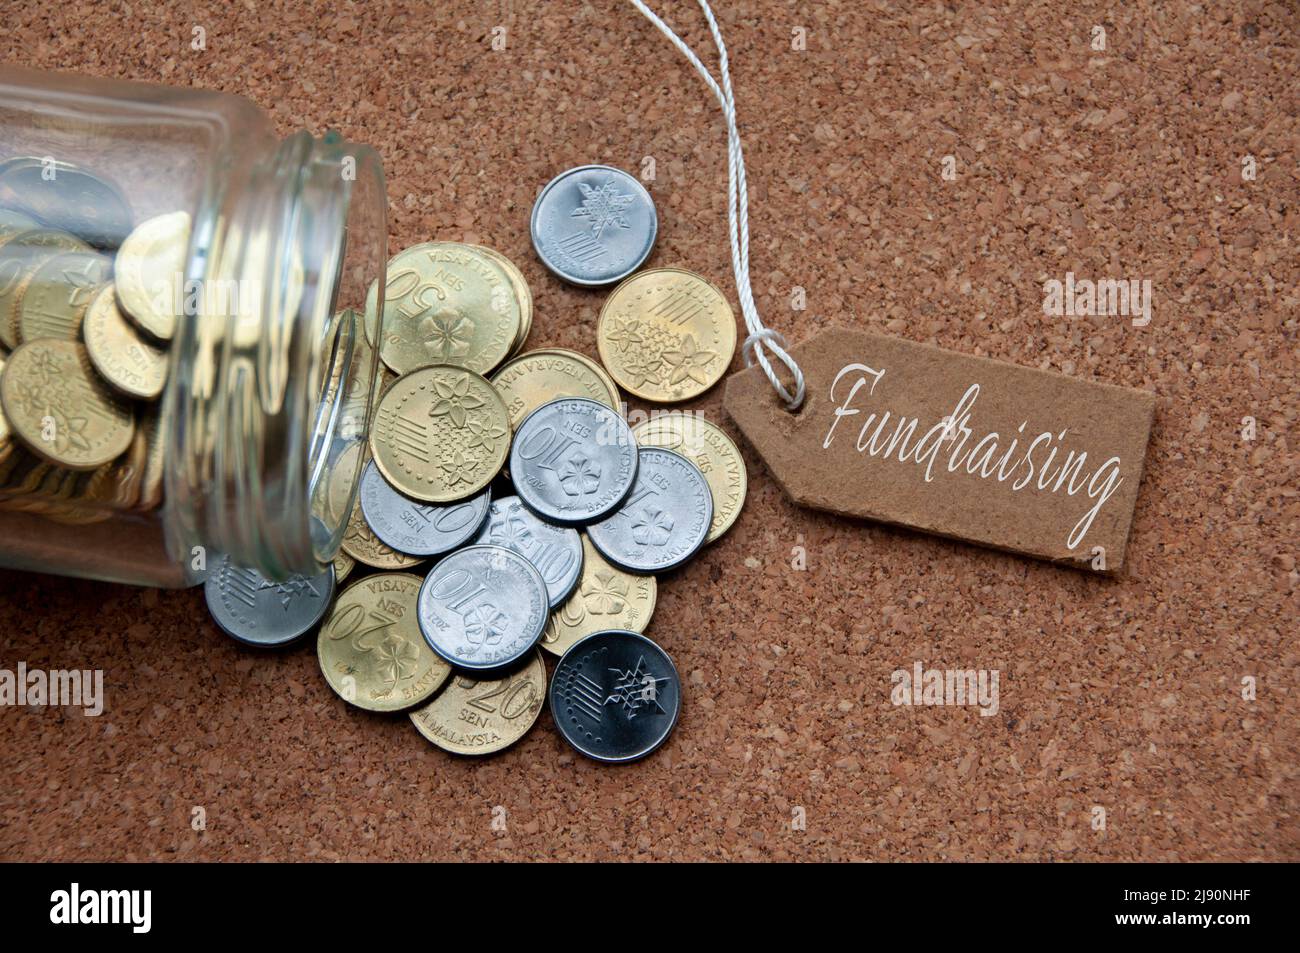 Vista superior de plata y monedas de oro con texto de recaudación de fondos en bloque de madera marrón. Concepto de caridad Foto de stock